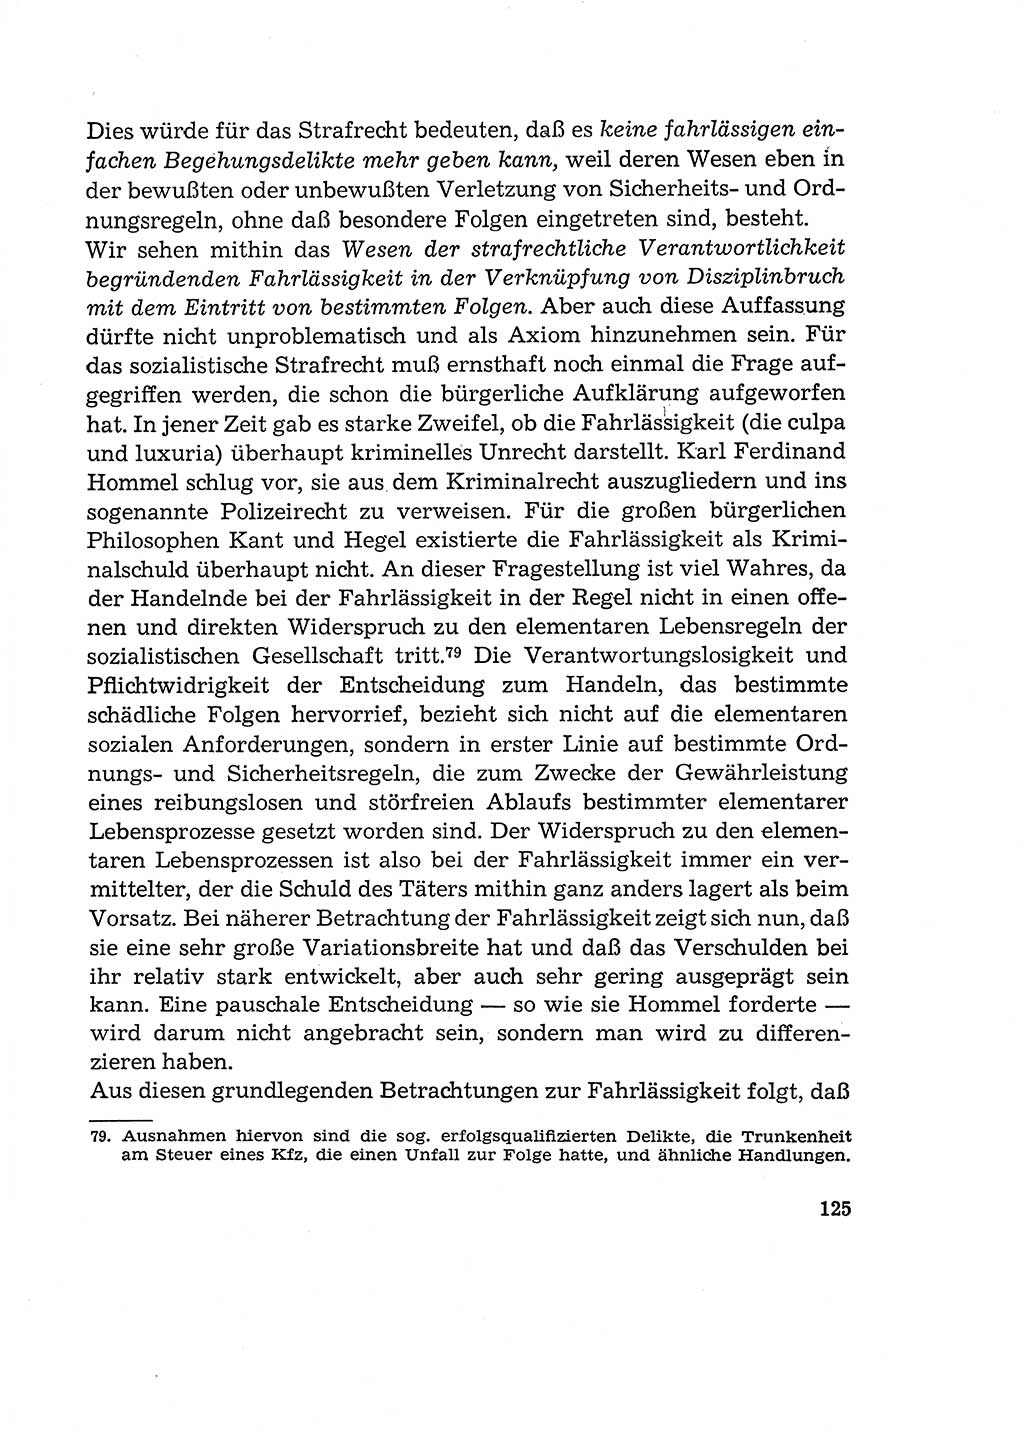 Verantwortung und Schuld im neuen Strafgesetzbuch (StGB) [Deutsche Demokratische Republik (DDR)] 1964, Seite 125 (Verantw. Sch. StGB DDR 1964, S. 125)